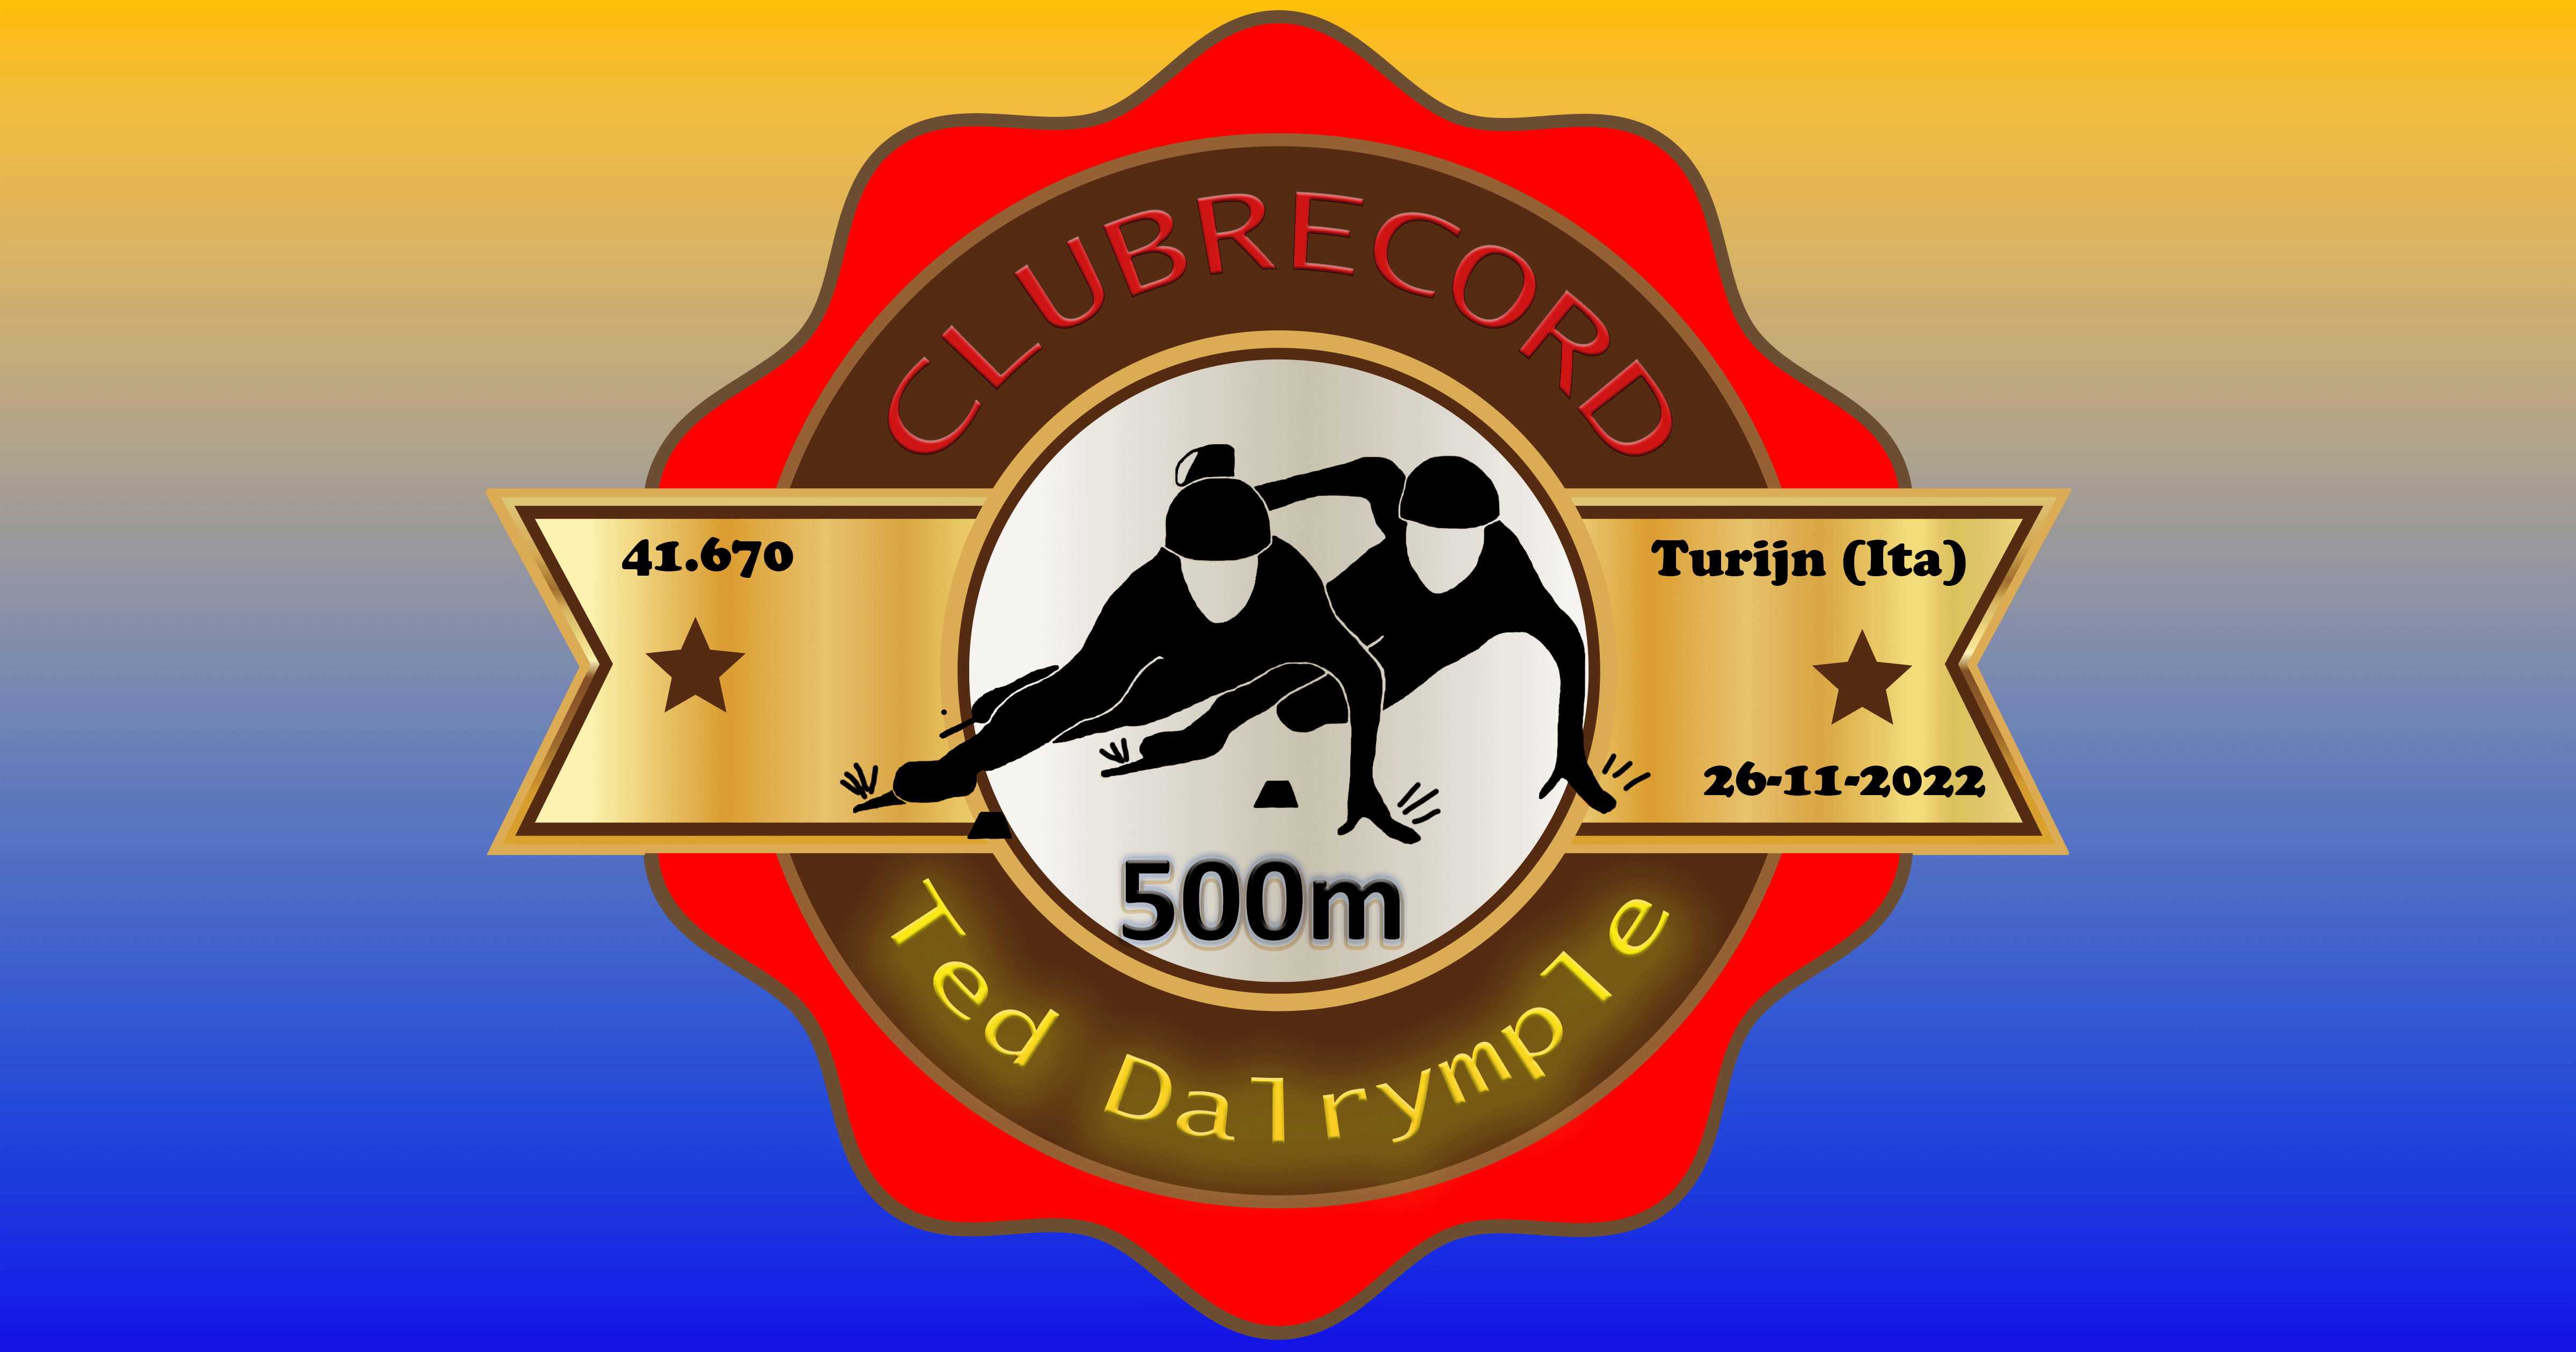 Clubrecord 500m verbeterd door Ted Dalrymple